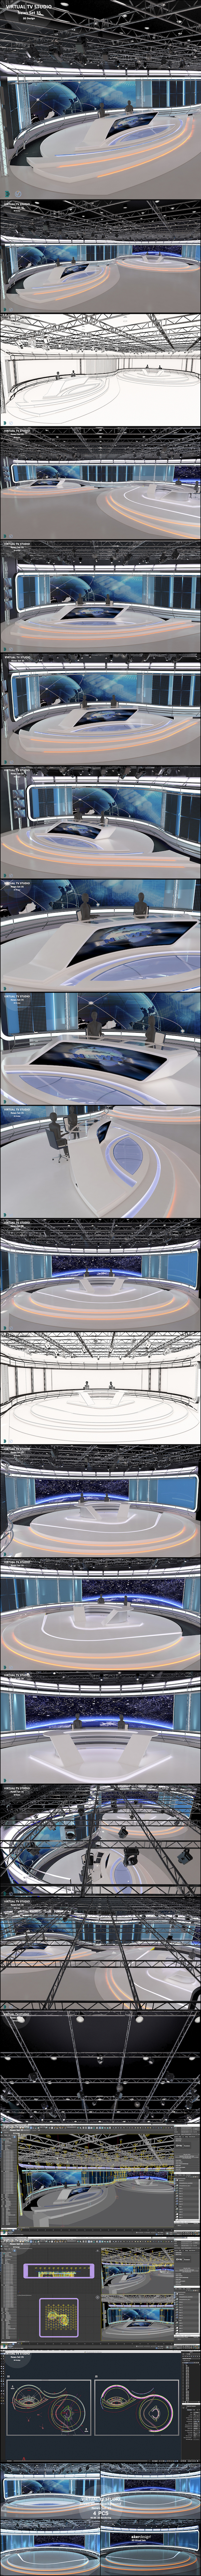 Virtual TV Studio - 3Docean 34466427